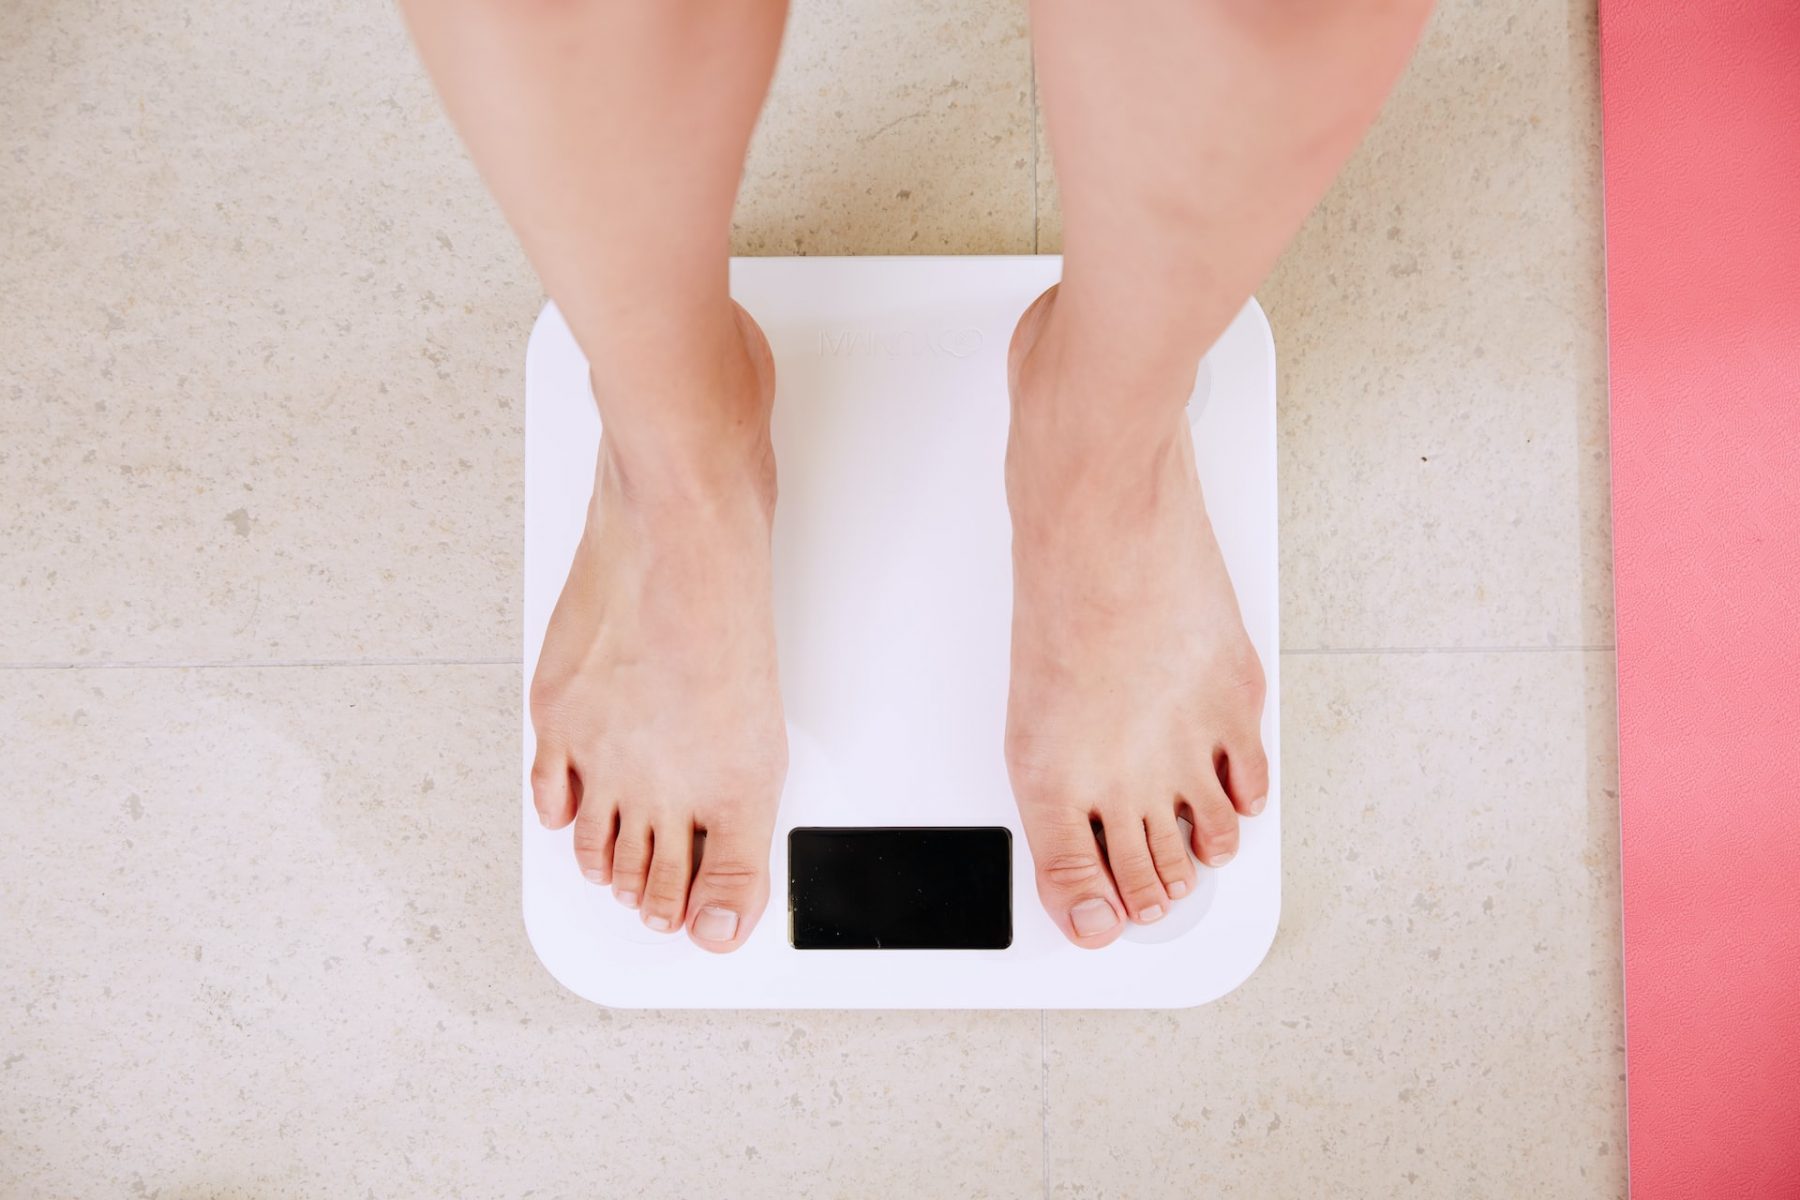 Βάρος: 5 λόγοι για τους οποίους μπορεί να πάρετε βάρος όταν προσπαθείτε να το χάσετε